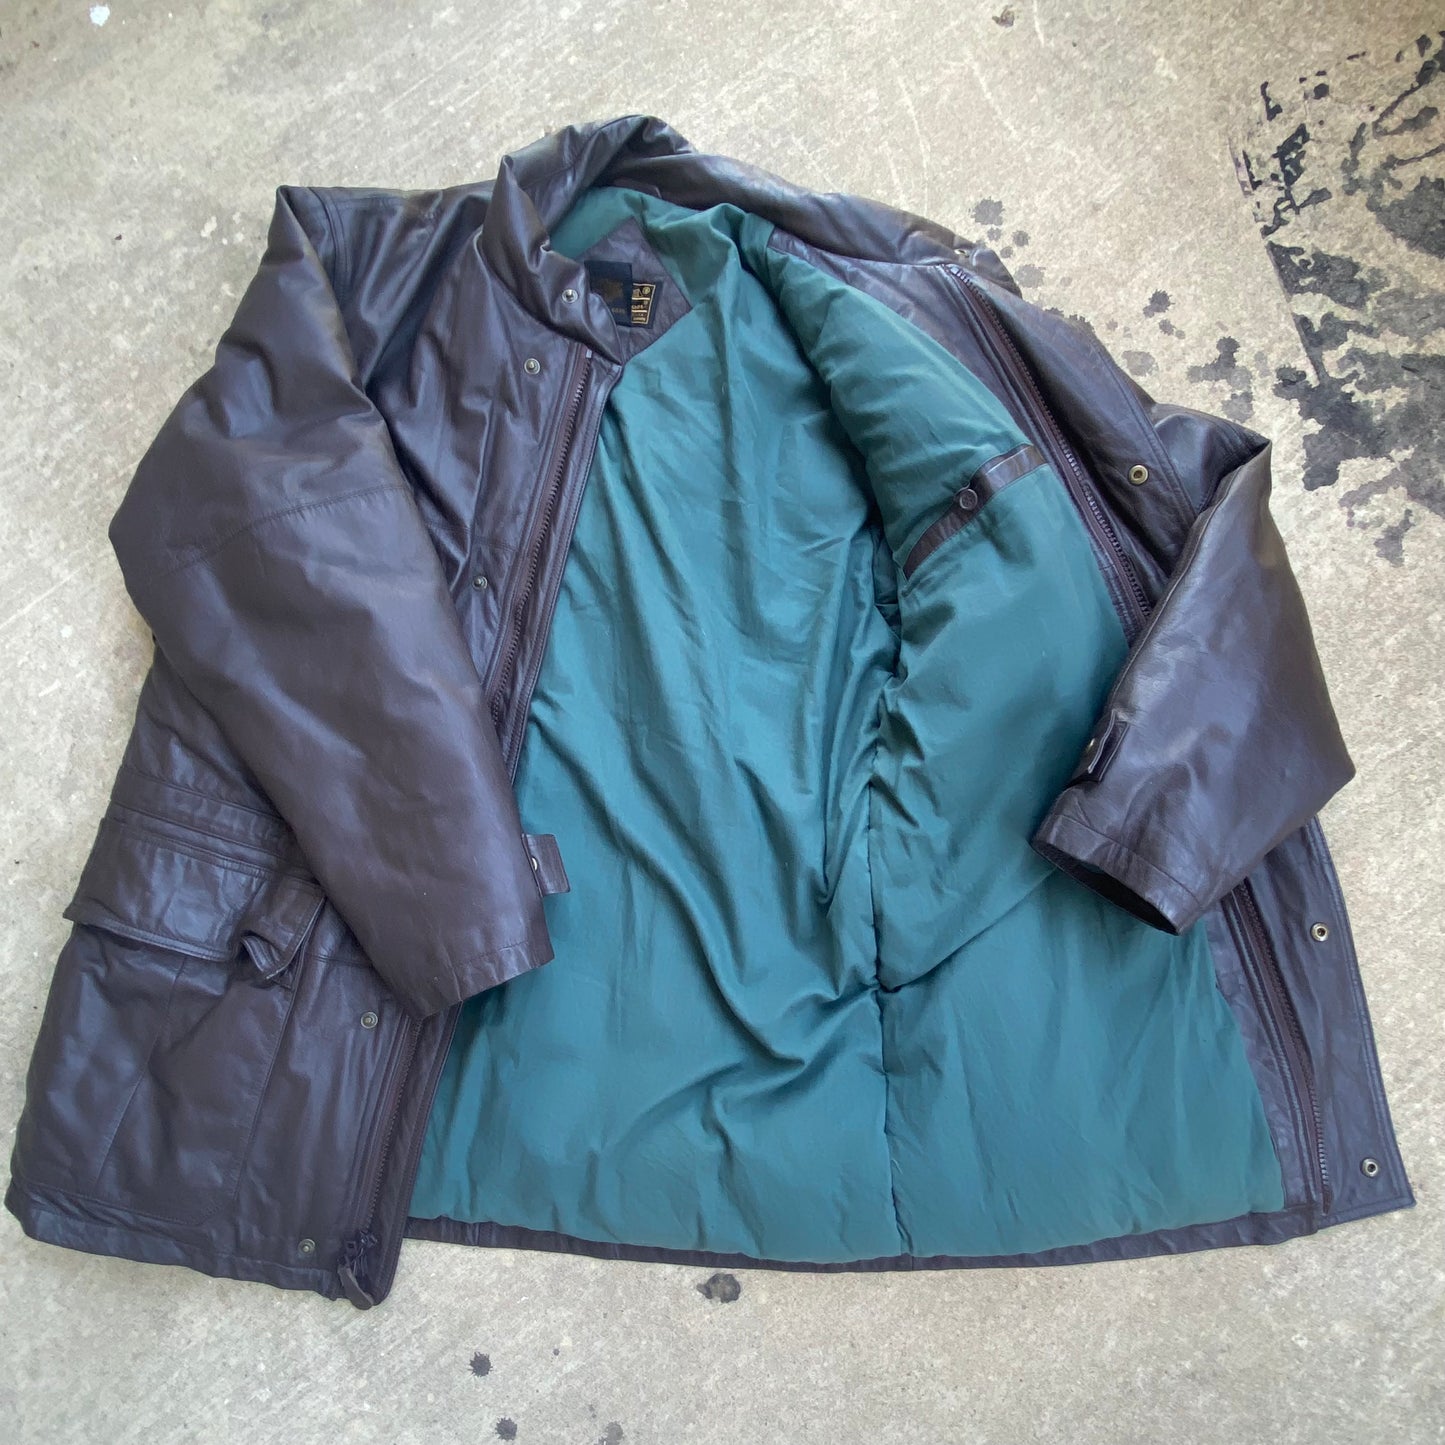 Eddie Bauer Brown Leather Jacket